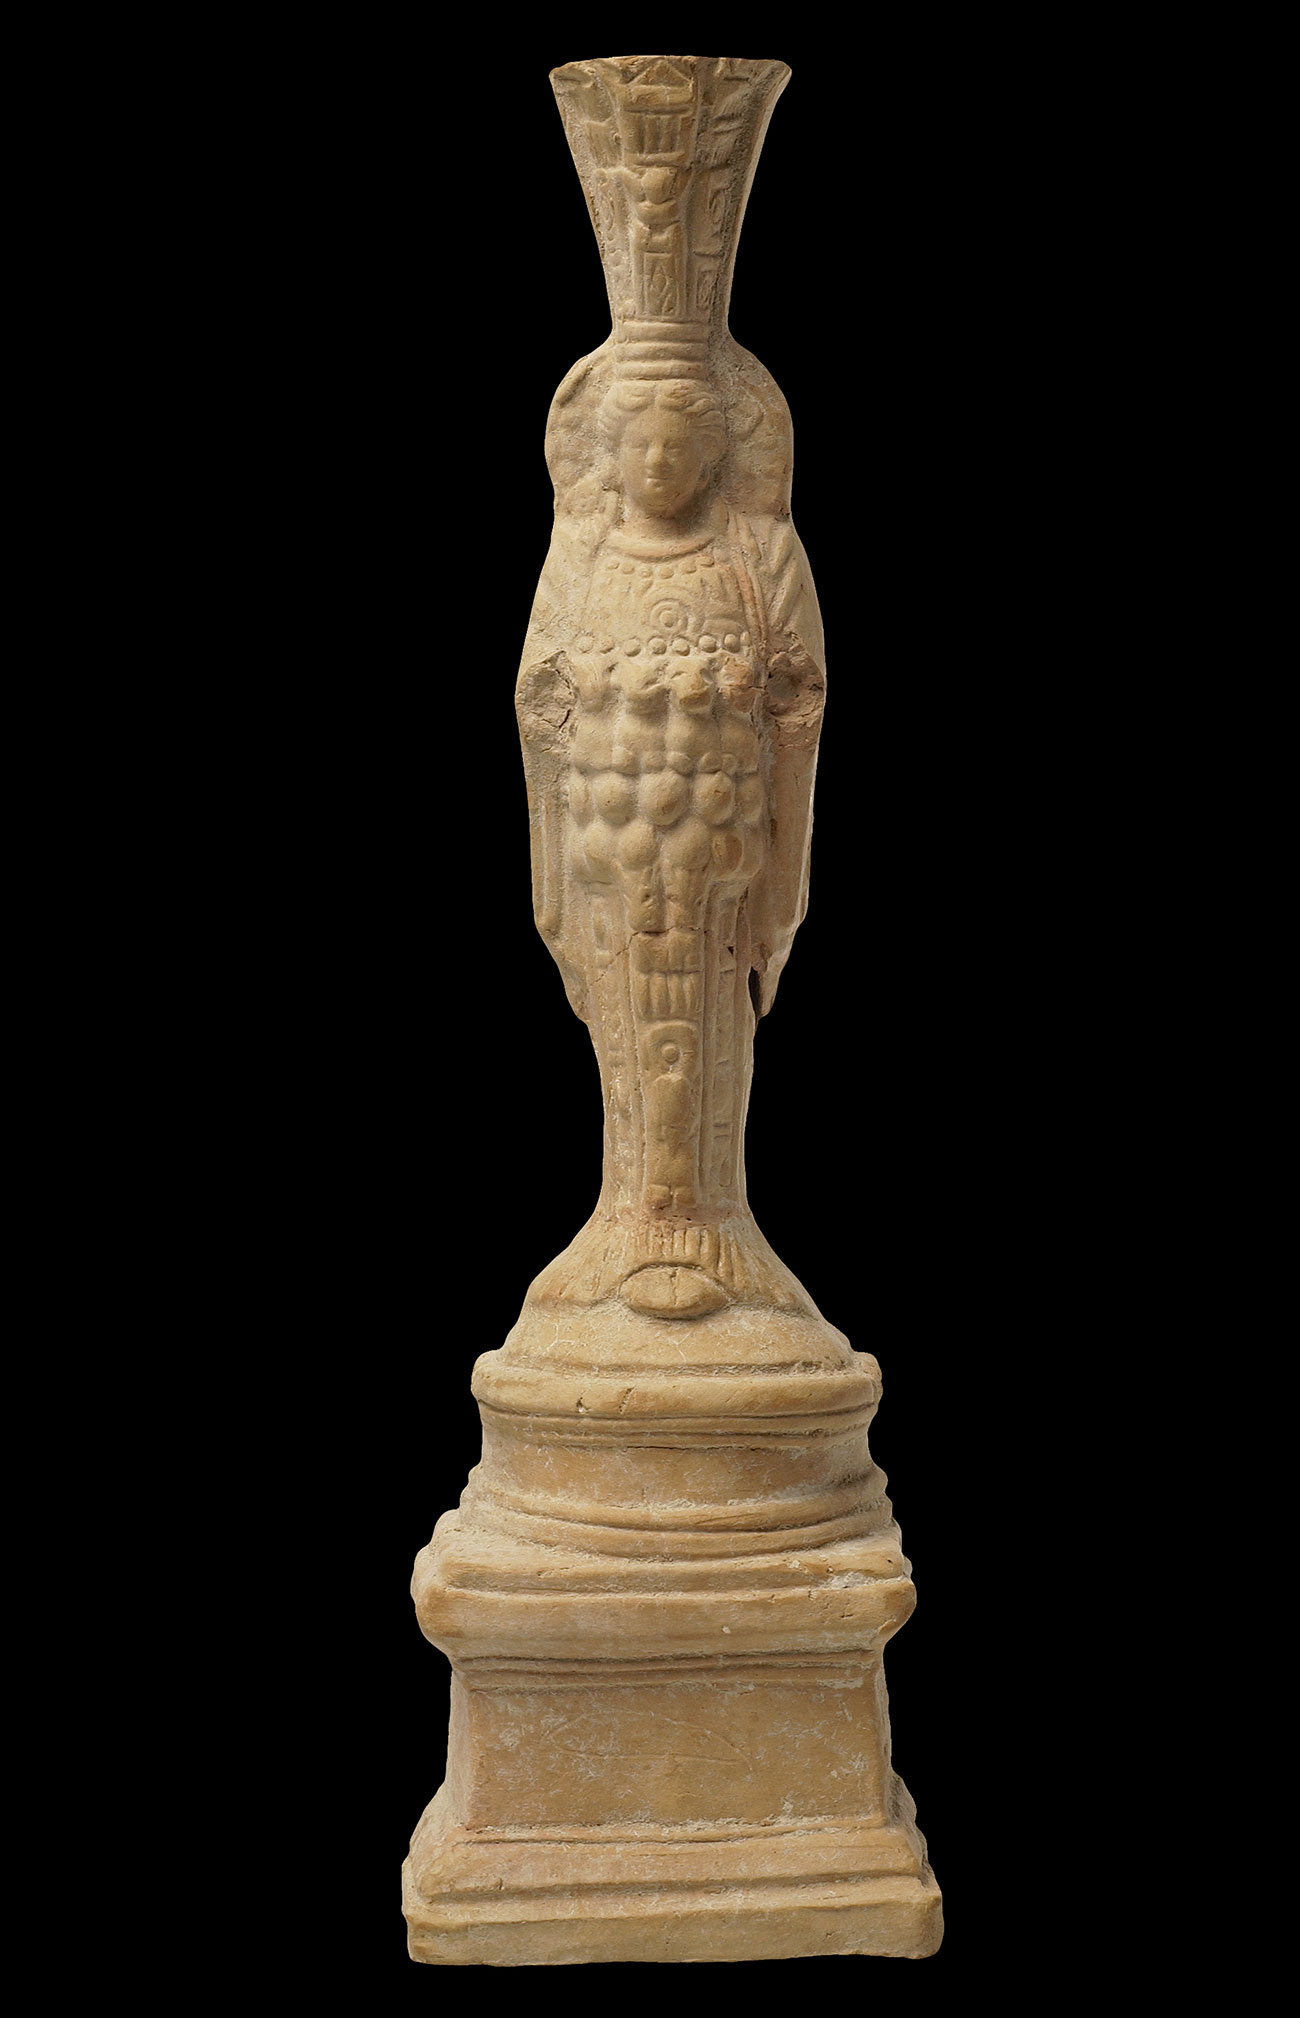 Statuette d'Artémis d'Ephèse, Asie Mineure © Musée d’art et d’histoire, Ville de Genève. Photo Samuel Crettenand